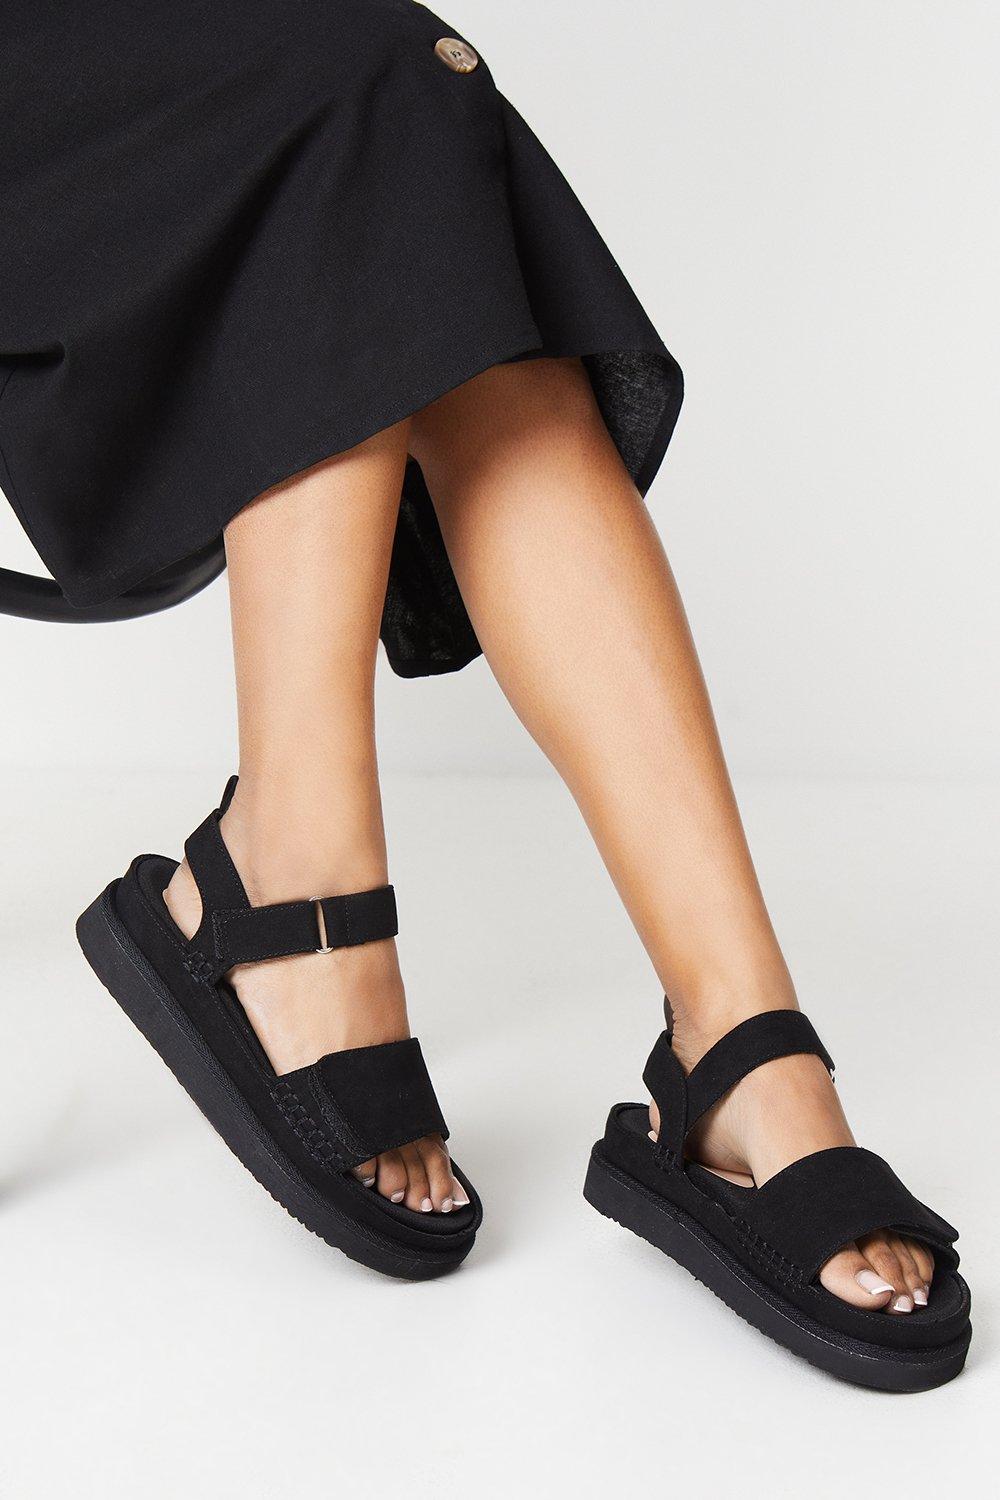 Womens Good For The Sole: Wide Fit Magnus Comfort Flatform Adjustable Strap Sandals